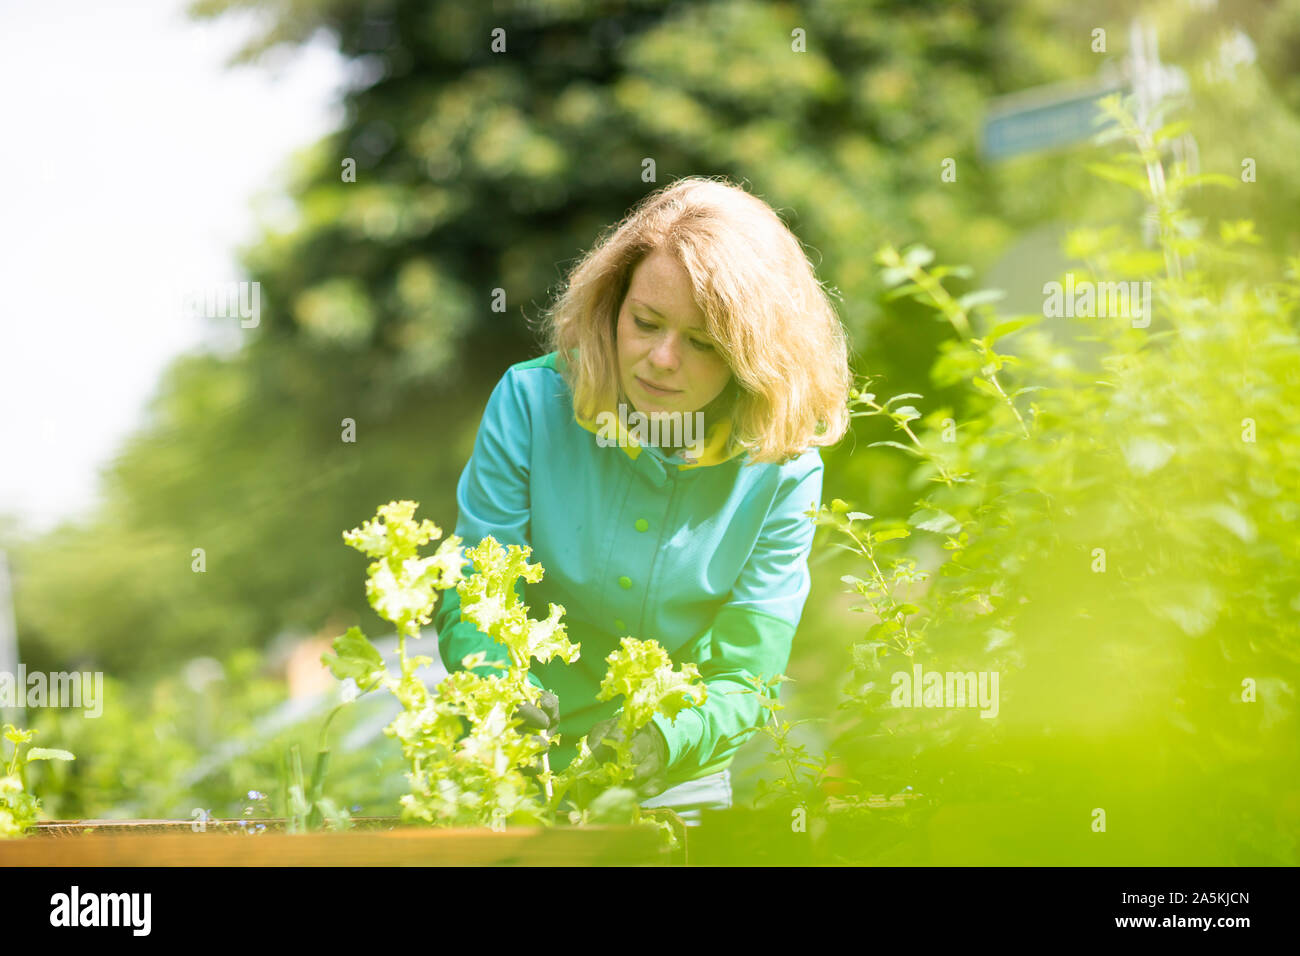 Mid adult woman tending plants in her garden Stock Photo